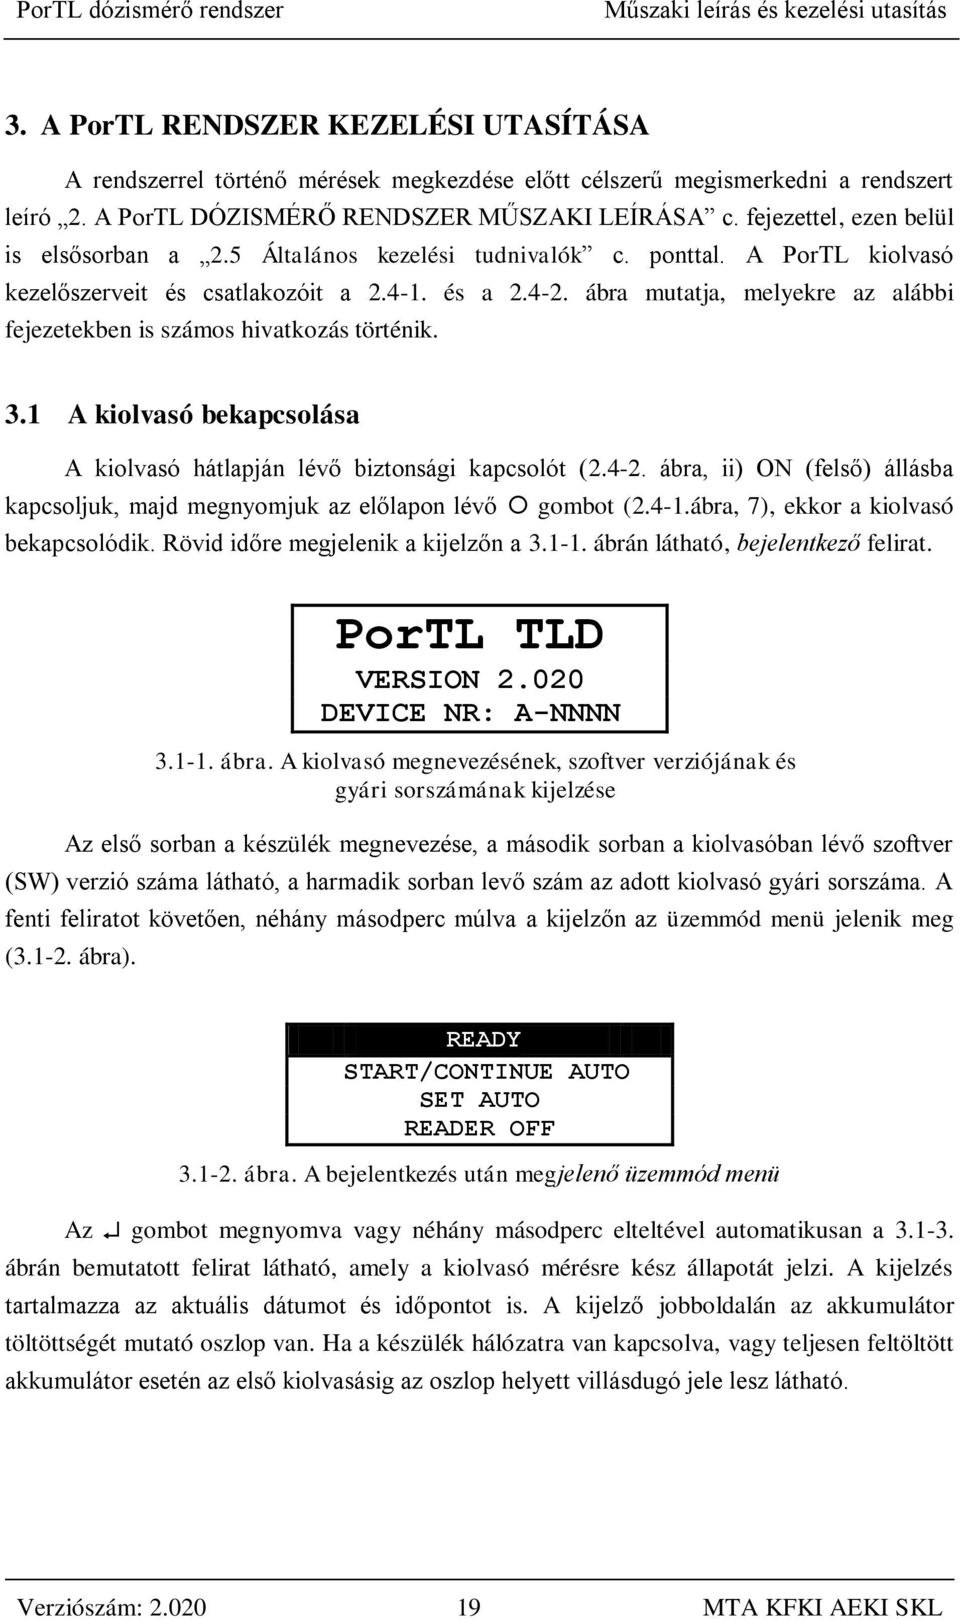 A PorTL dózismérő rendszer műszaki leírása és kezelési utasítása  (Verziószám: 2.020) augusztus - PDF Free Download